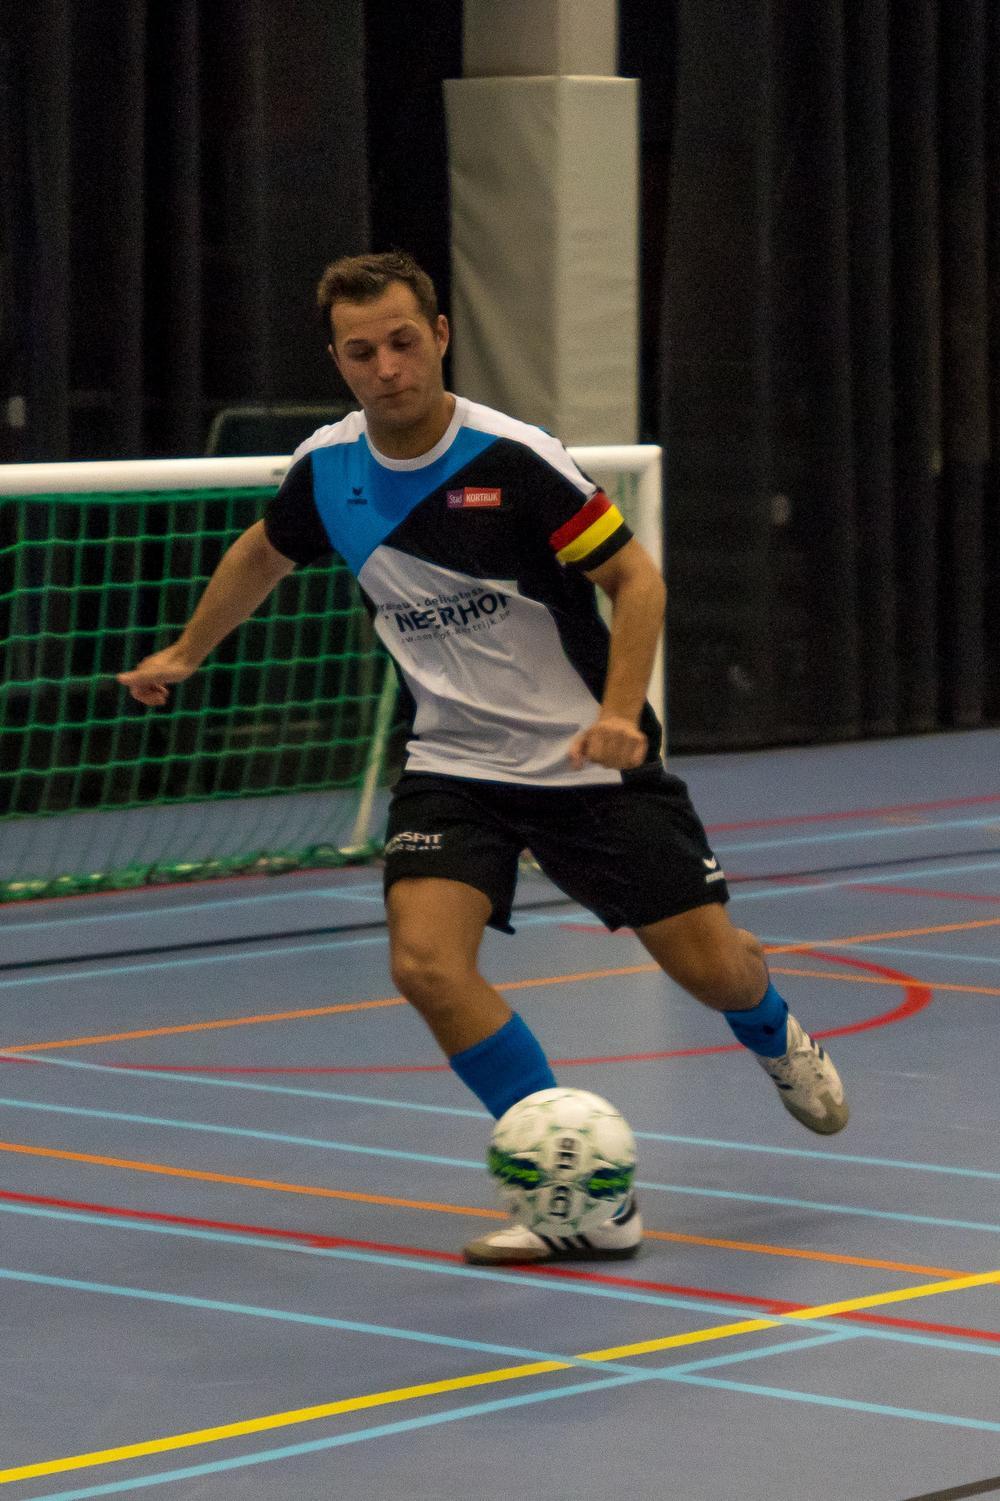 Doelman Stephen Malfait scoorde vier keer voor Traiteur Neerhof Kortrijk.